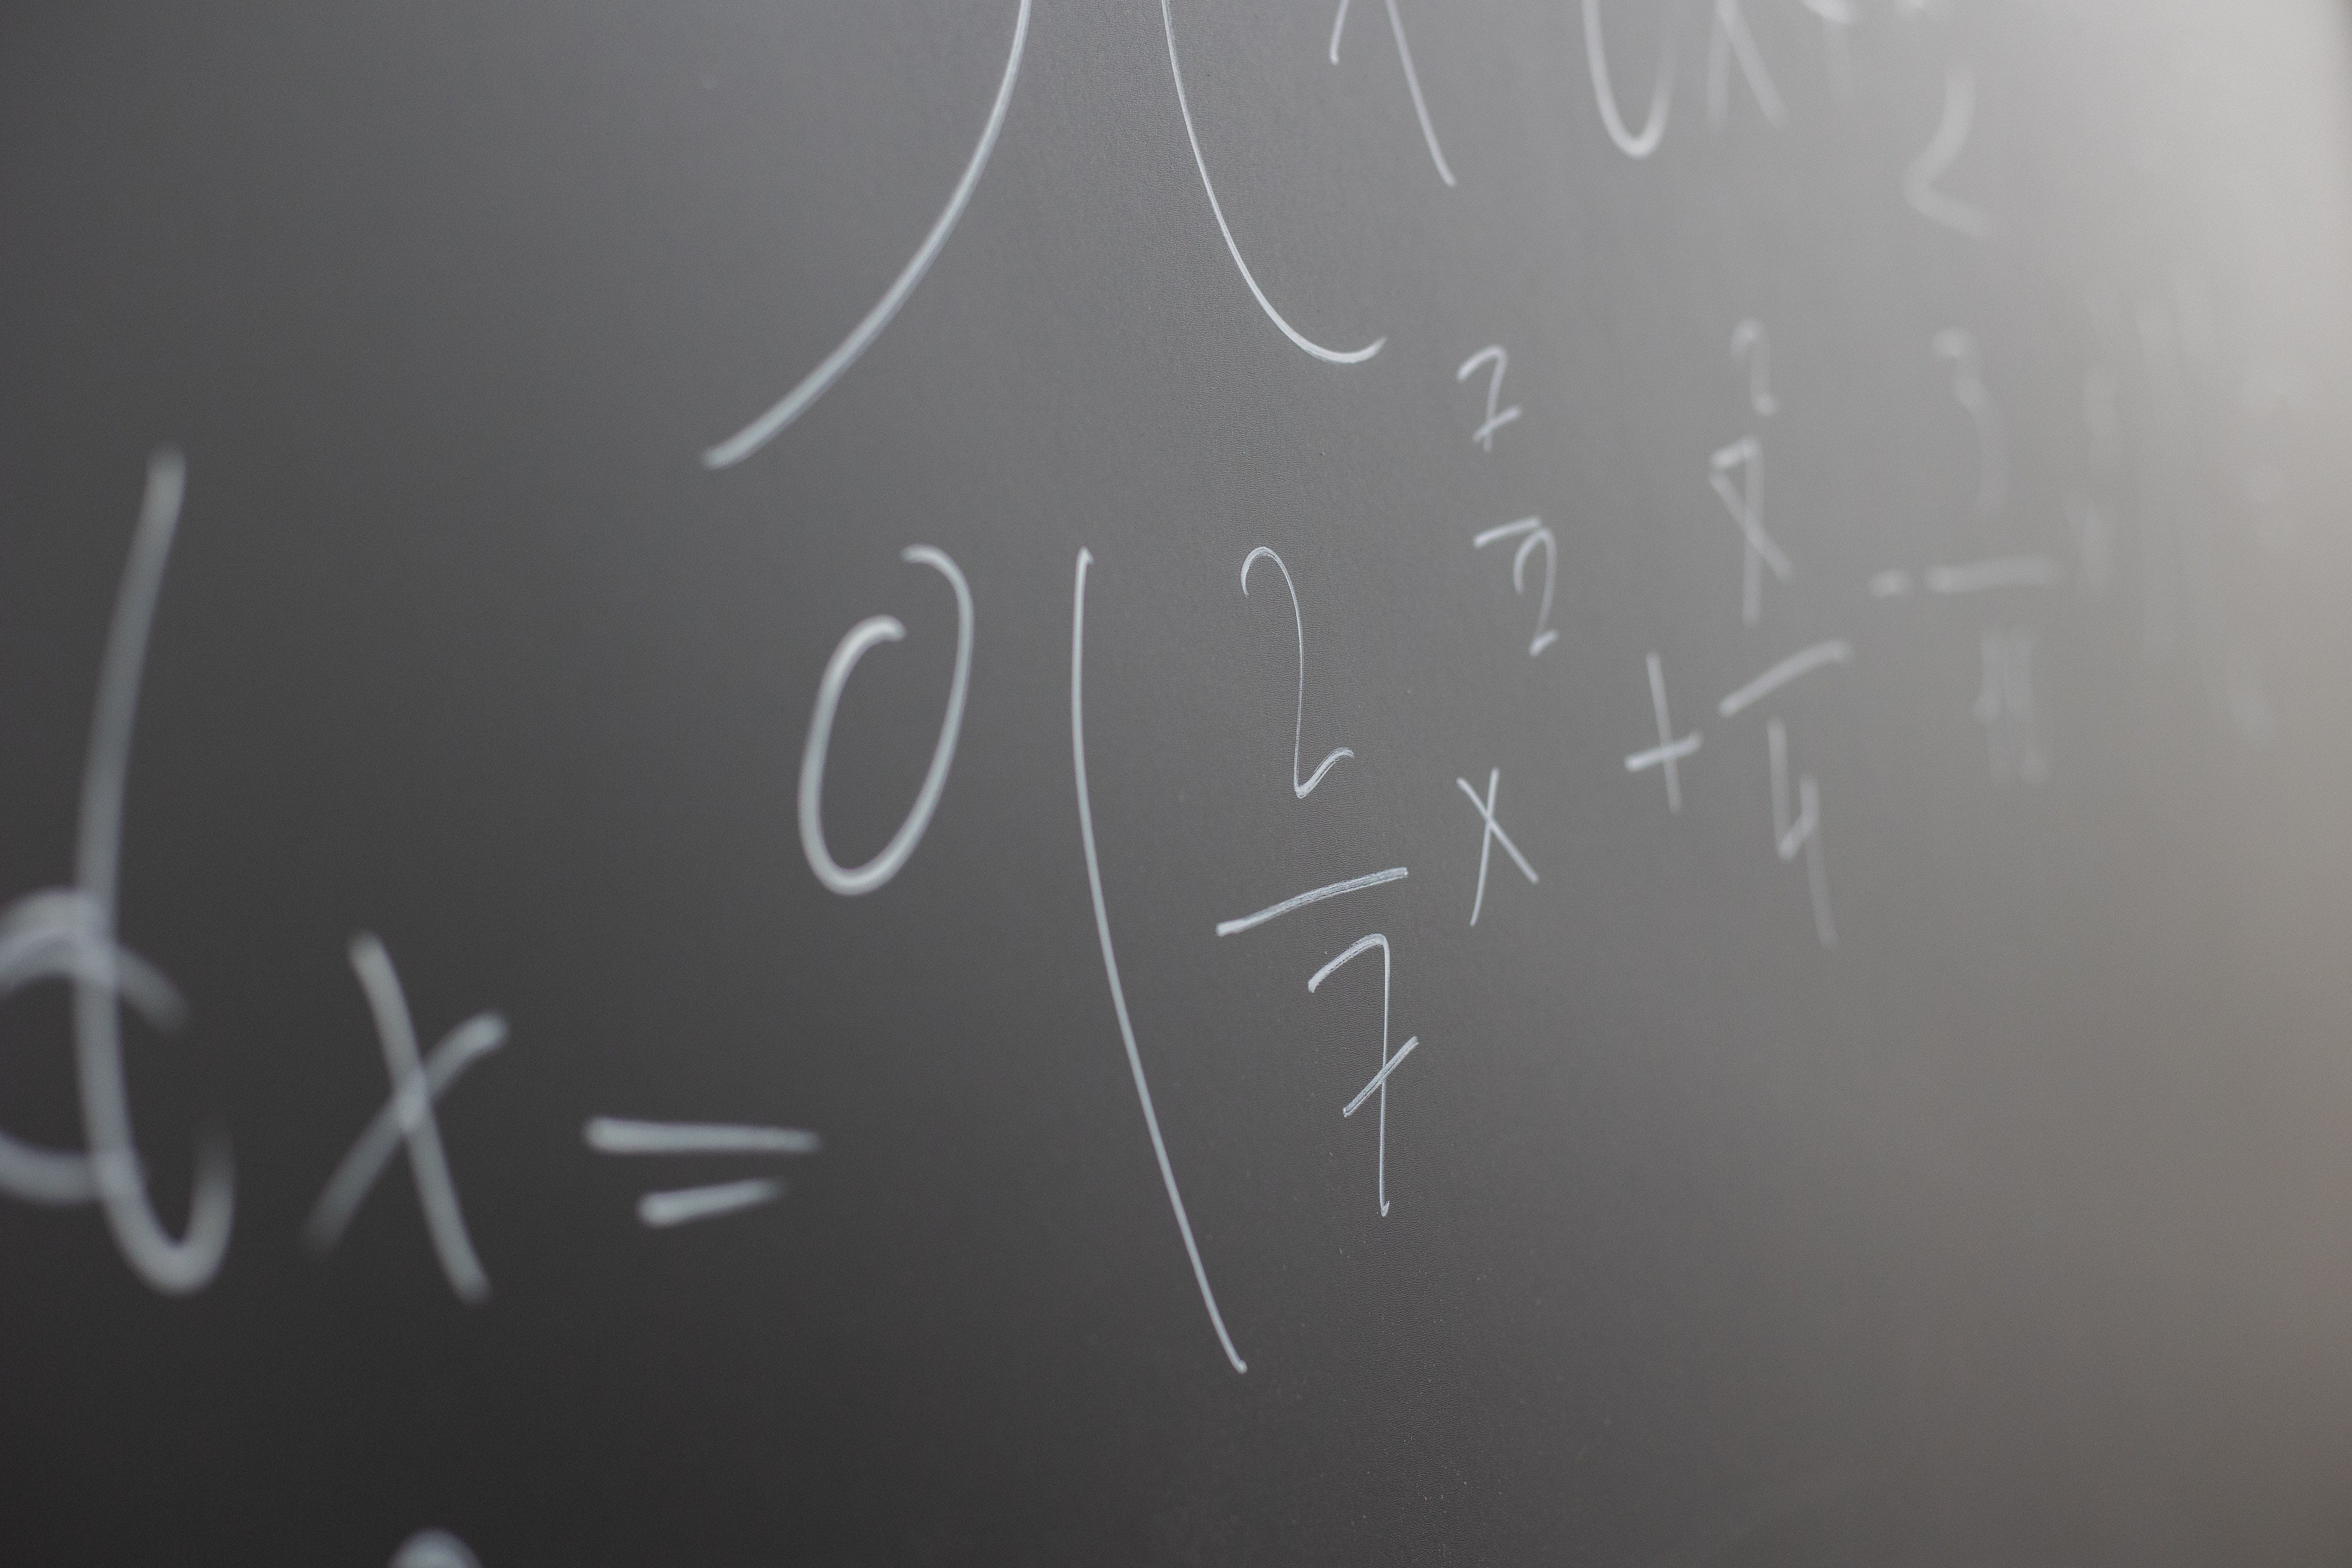 Mathe Crashkurs: Textaufgaben und Gleichungen lösen Teil 3 von 3